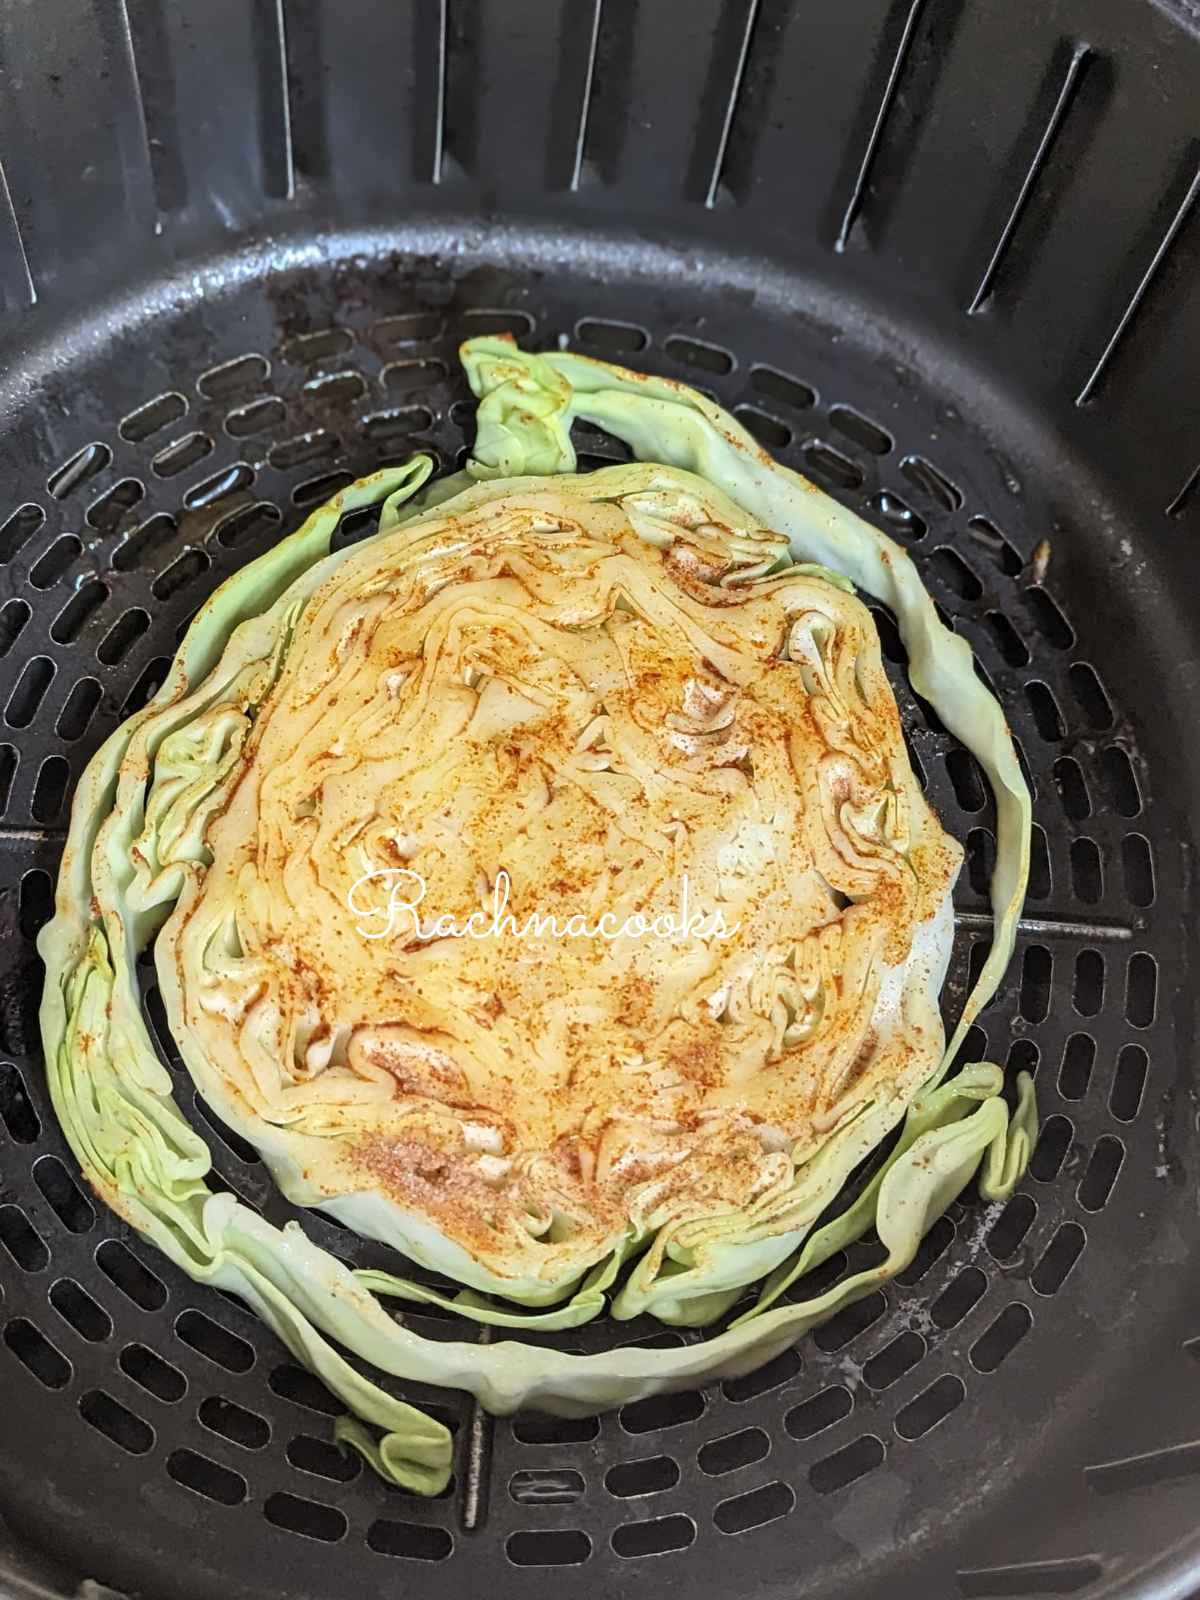 Seasoned cabbage steak placed in air fryer basket.